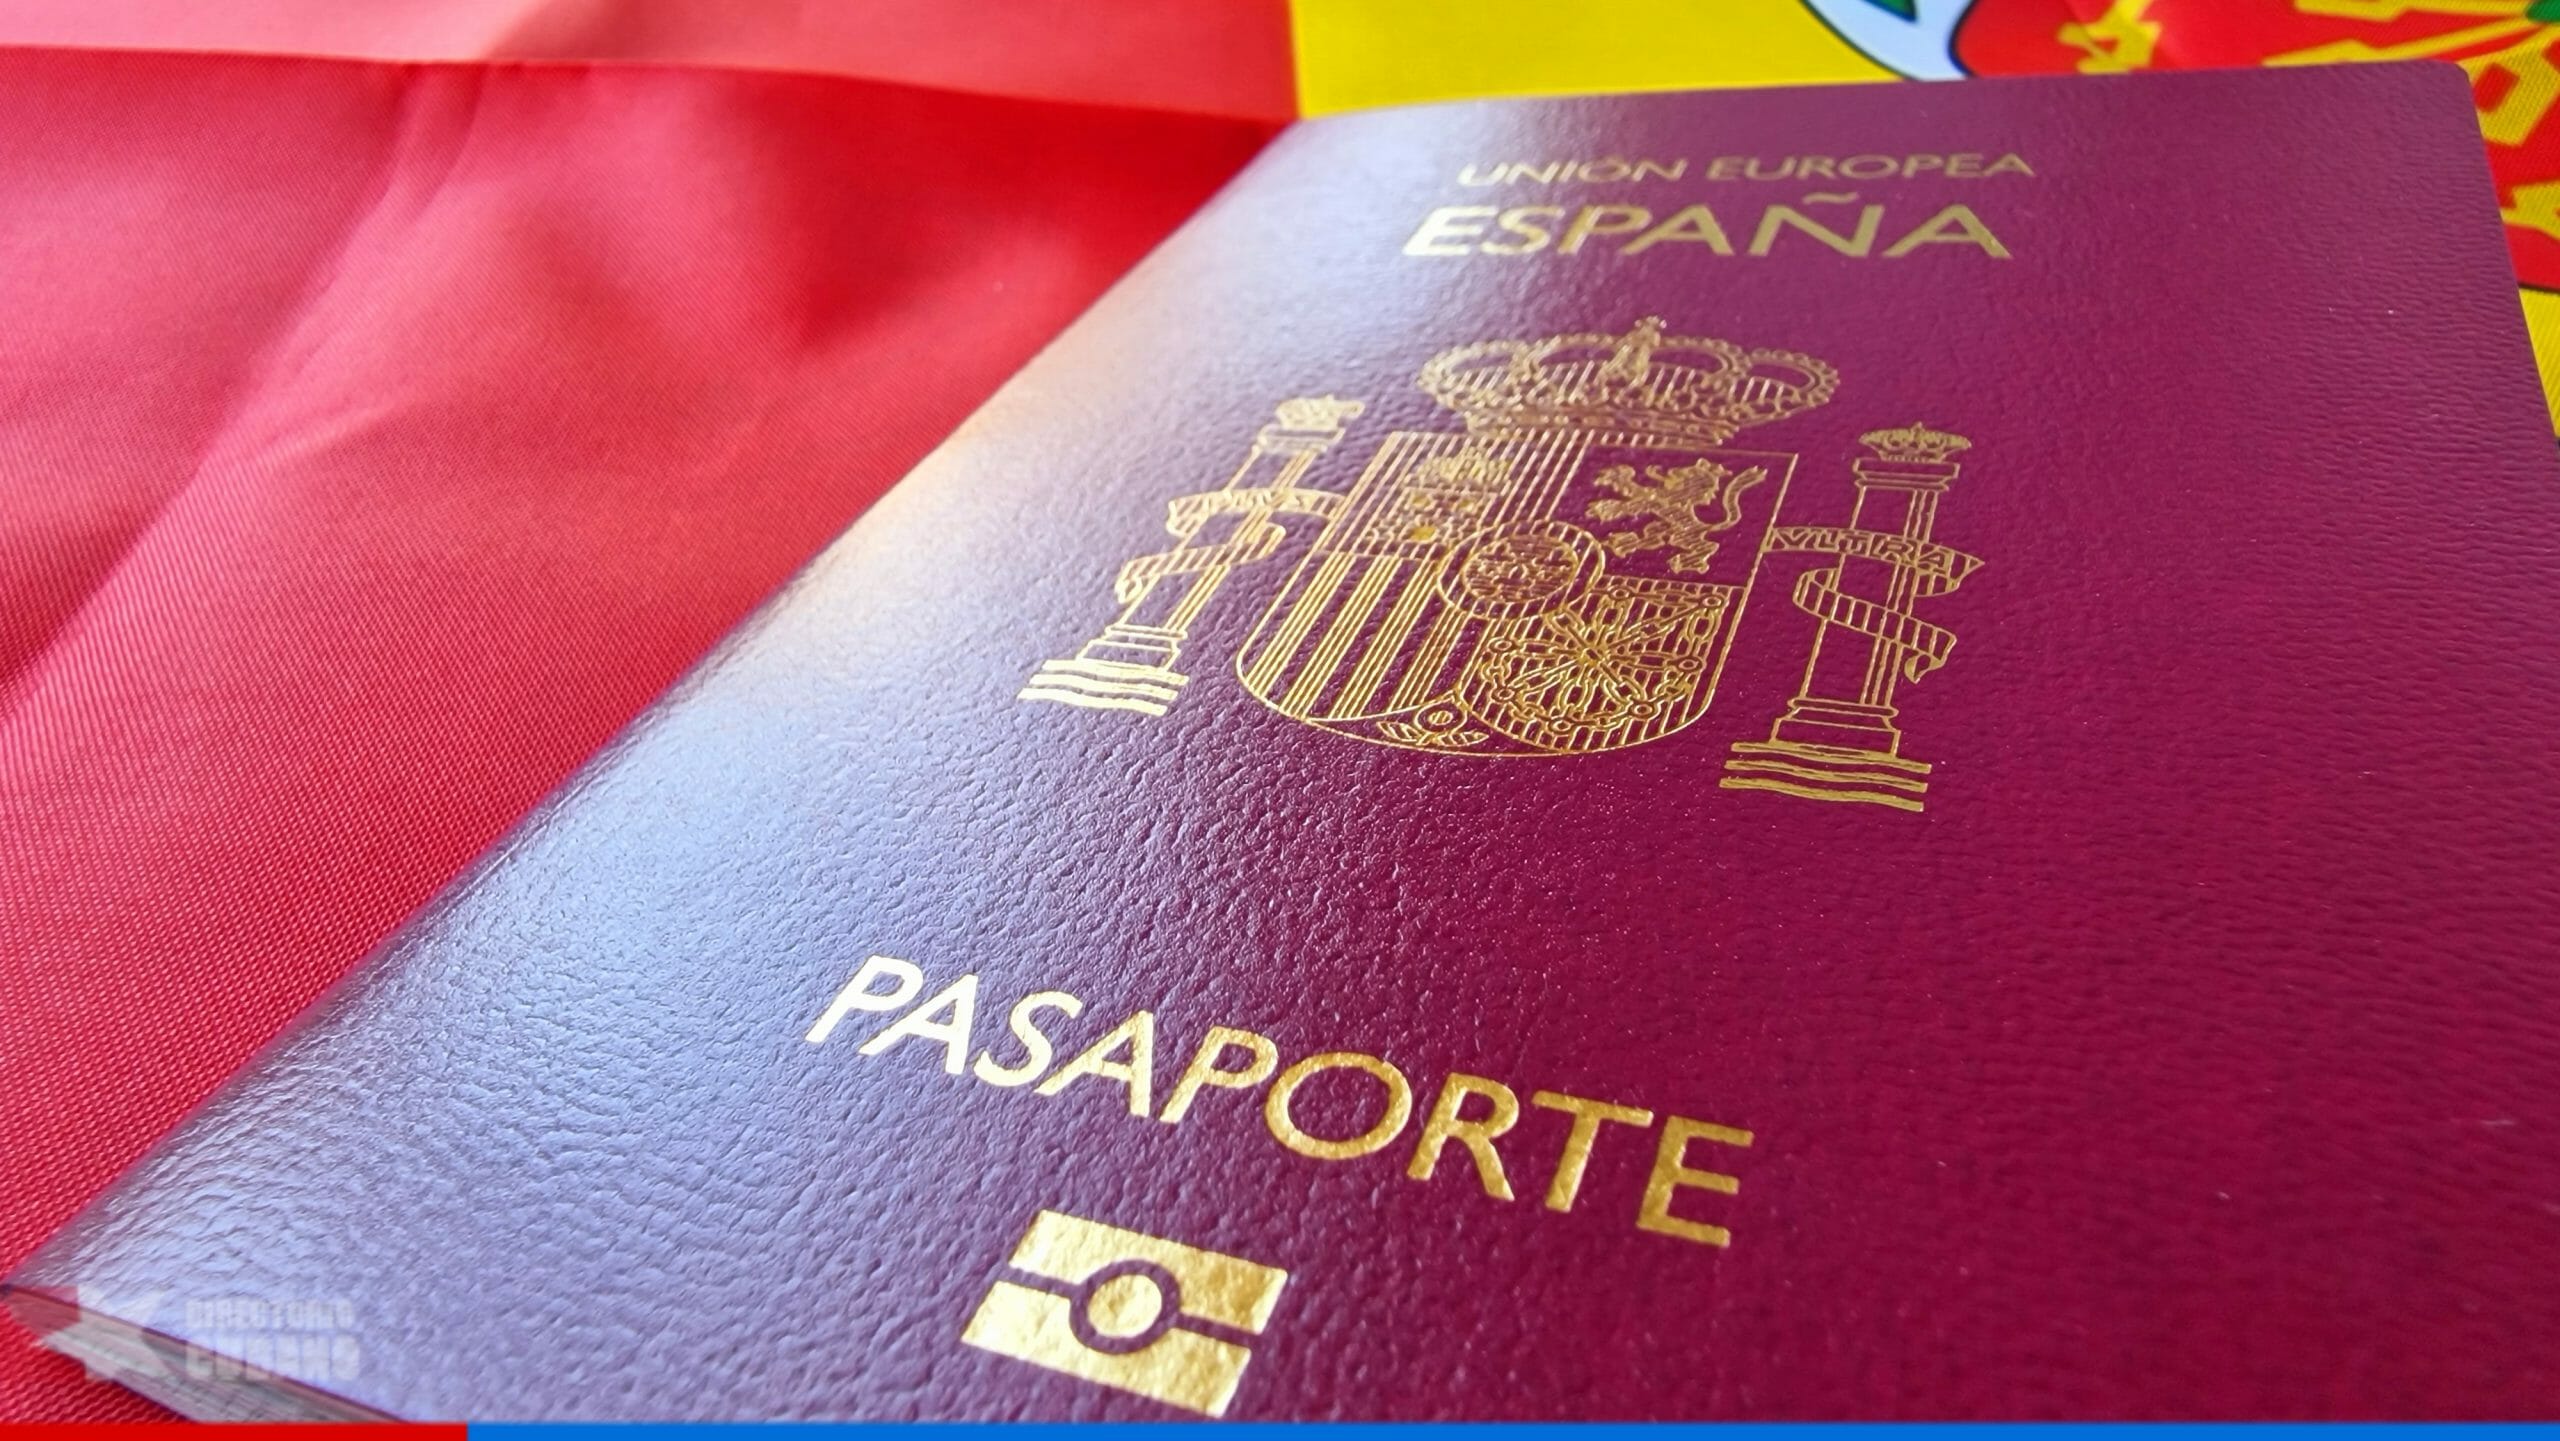 Dove posso viaggiare senza visto come cittadino cubano-spagnolo?